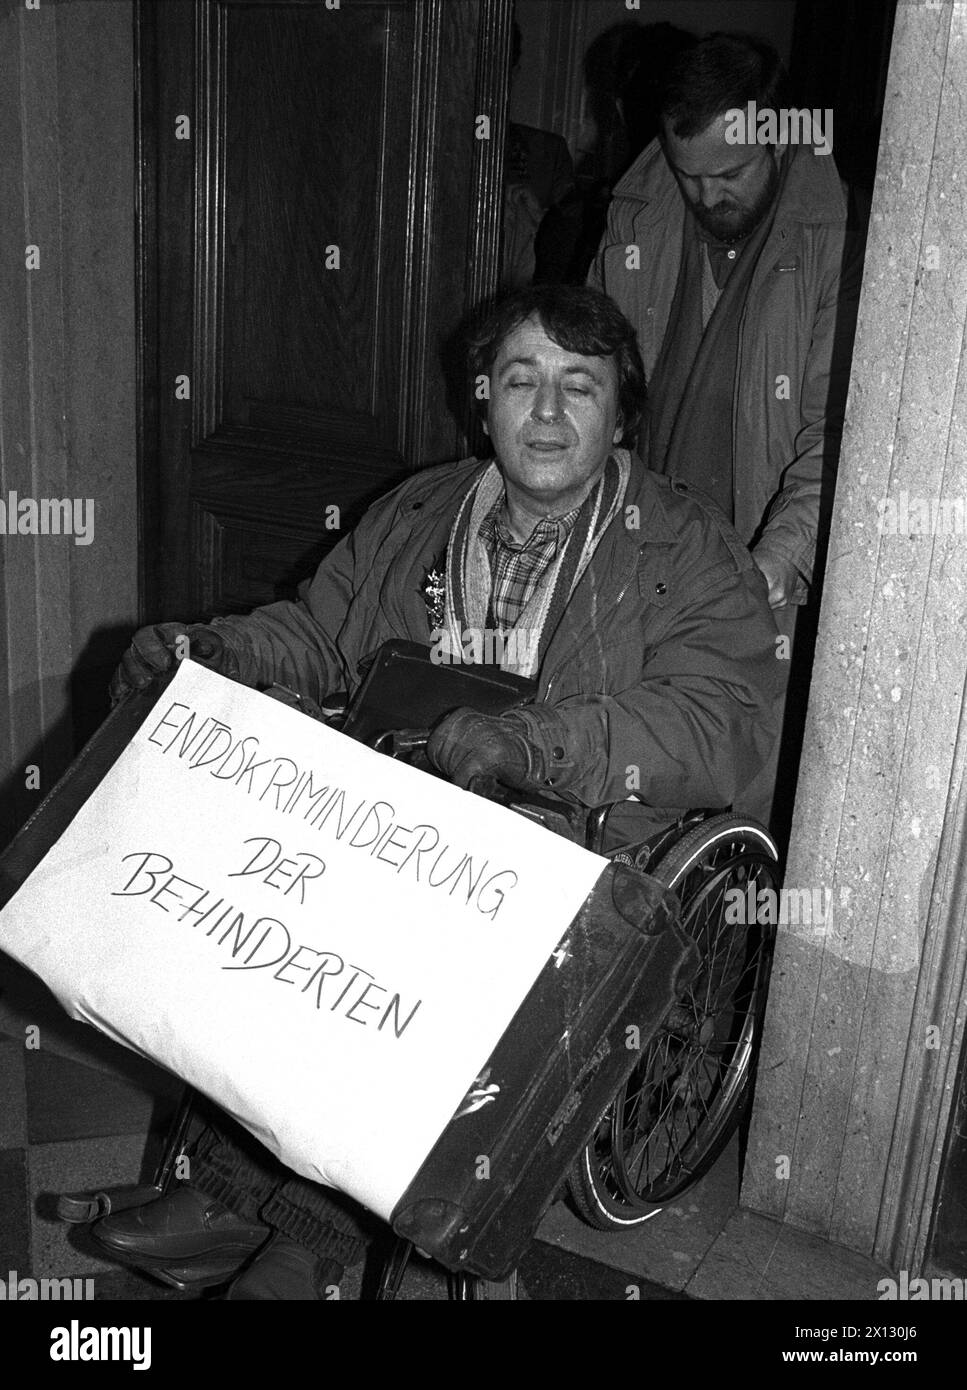 Das Foto vom 17. Dezember zeigt Manfred SRB, Abgeordneter der Grünen, mit dem Rollstuhl Probleme beim Einzug in das parlament in Wien. - 19861217 PD0031 - Rechteinfo: Rechte verwaltet (RM) Stockfoto